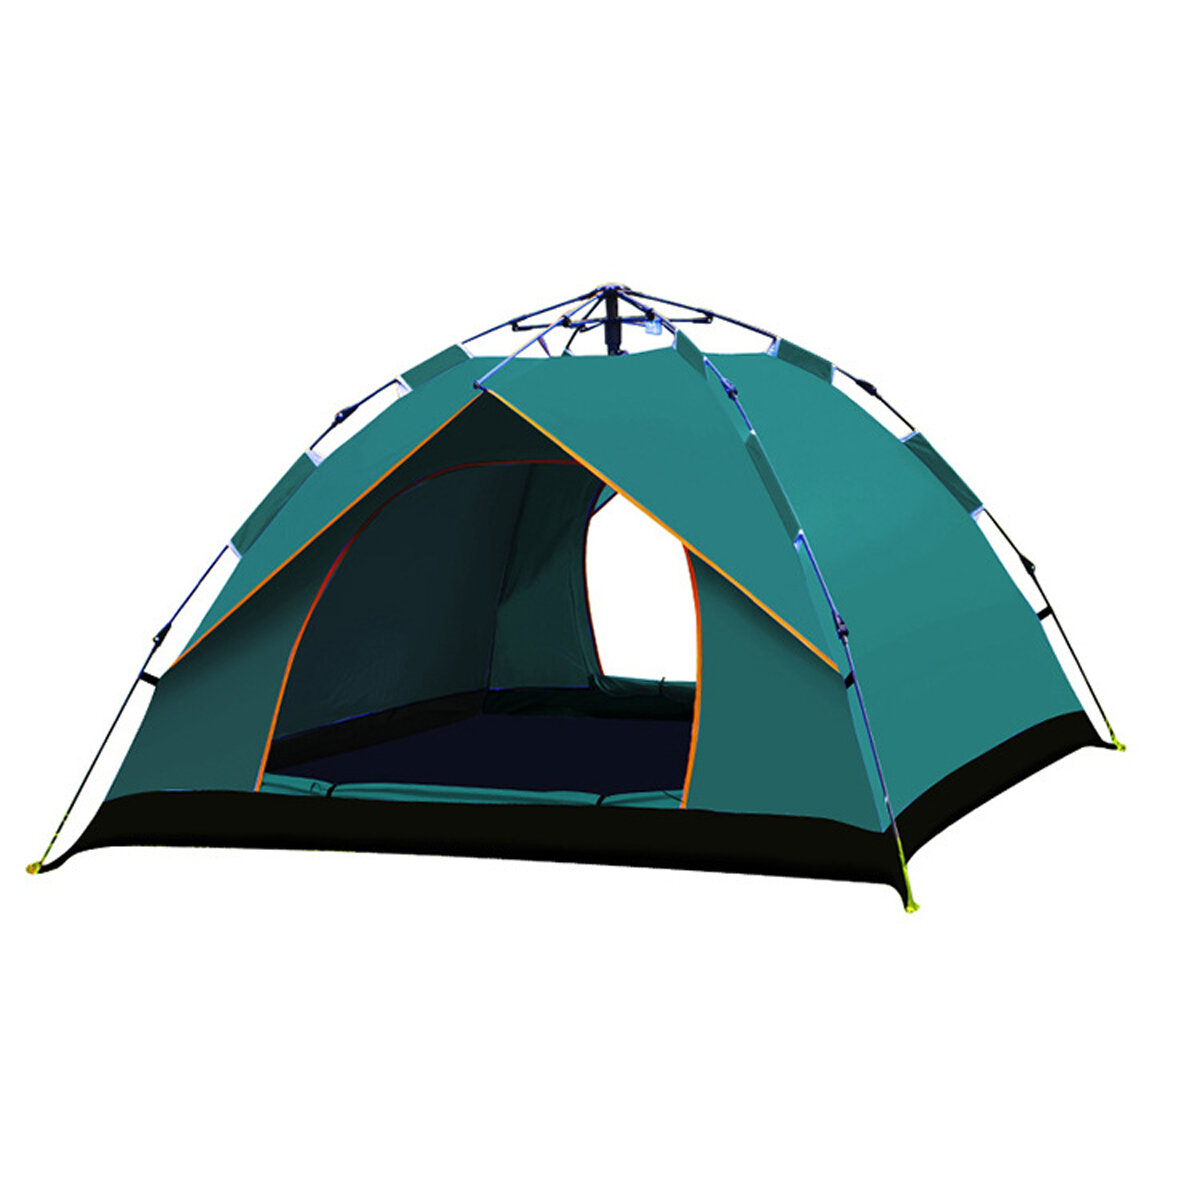 Tente de camping étanche IPRee® pour 3-5 personnes, tissu en PU 210T UV Protection de la tente pour les voyages en plein air, randonnée, camping